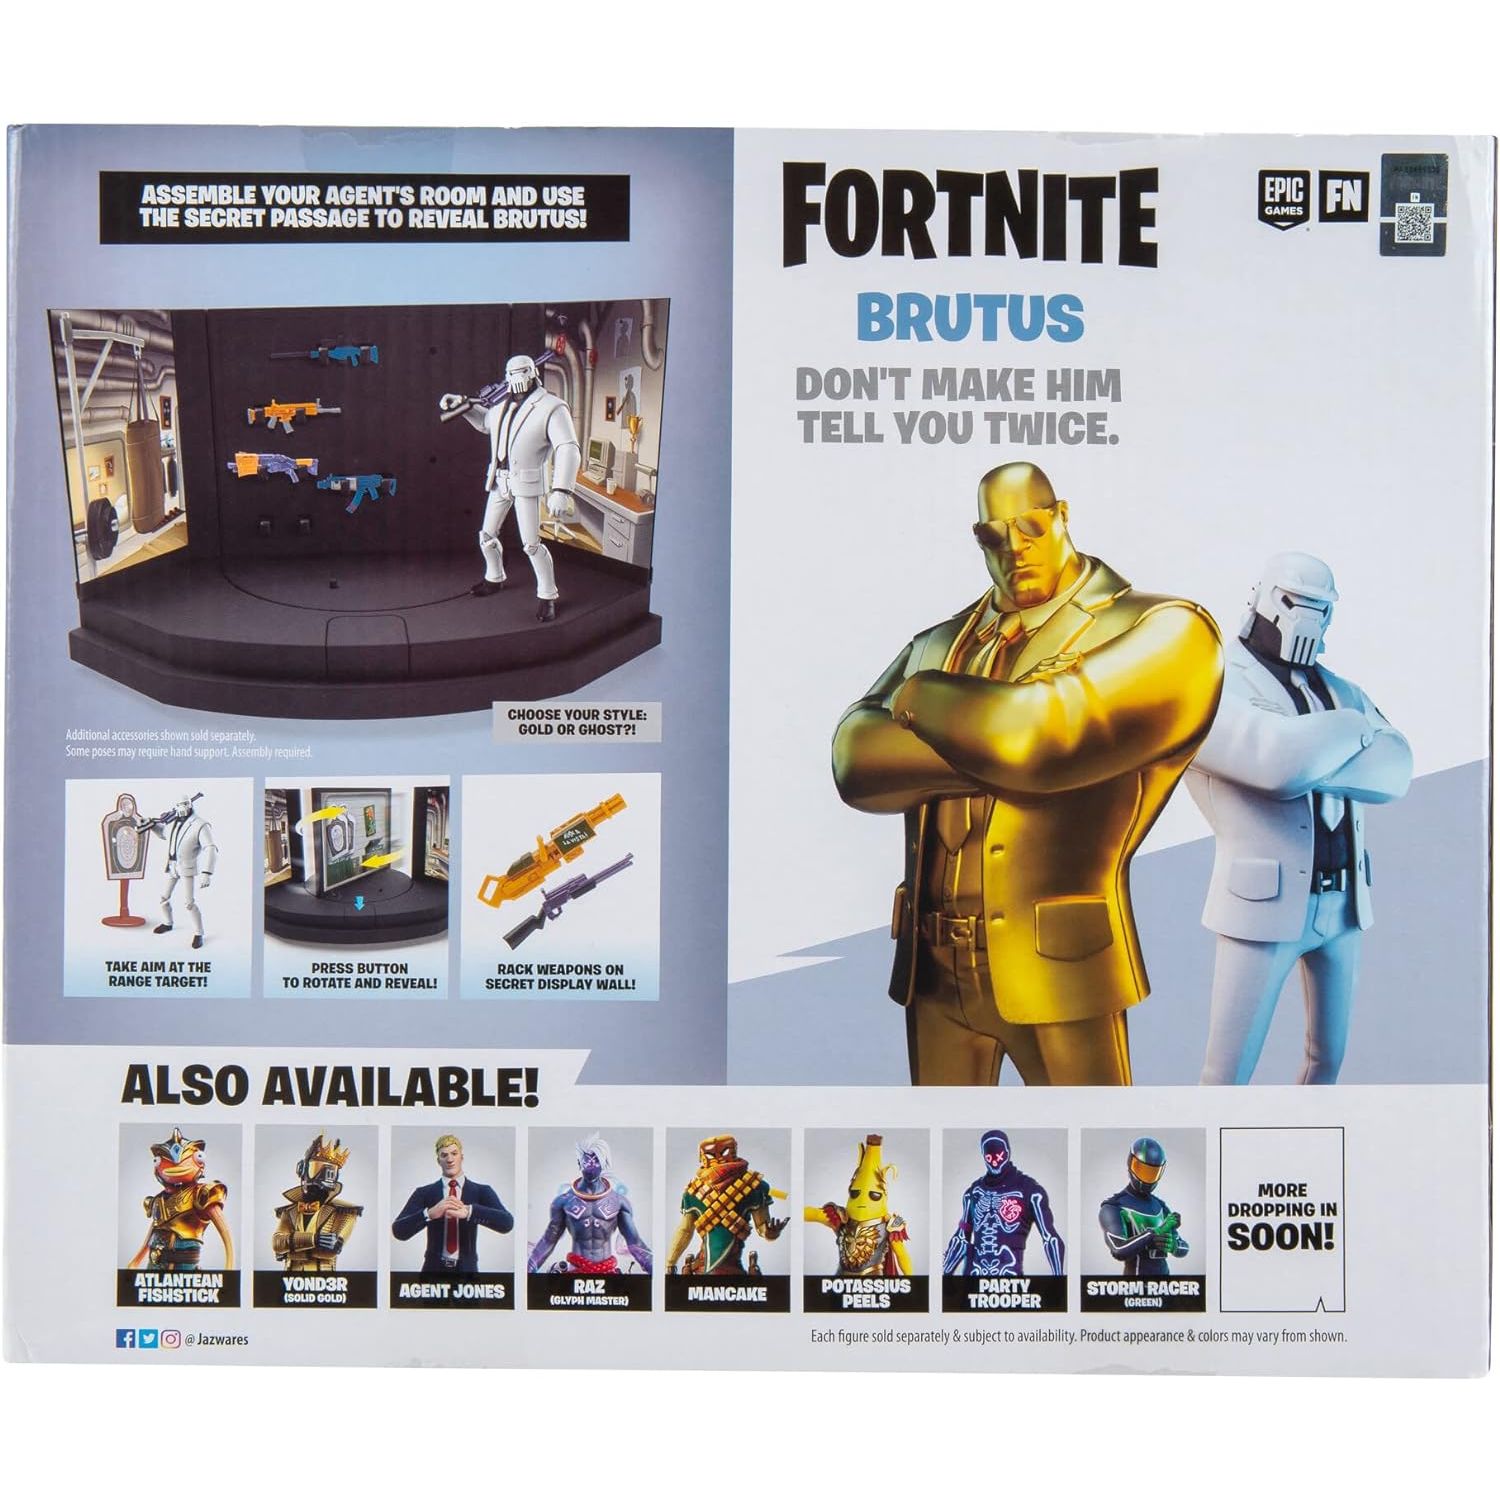 مجموعة اللعب المميزة لغرفة وكيل Fortnite Brutus مع شخصيتين مفصليتين مقاس 4 بوصات بالإضافة إلى الأسلحة والملحقات